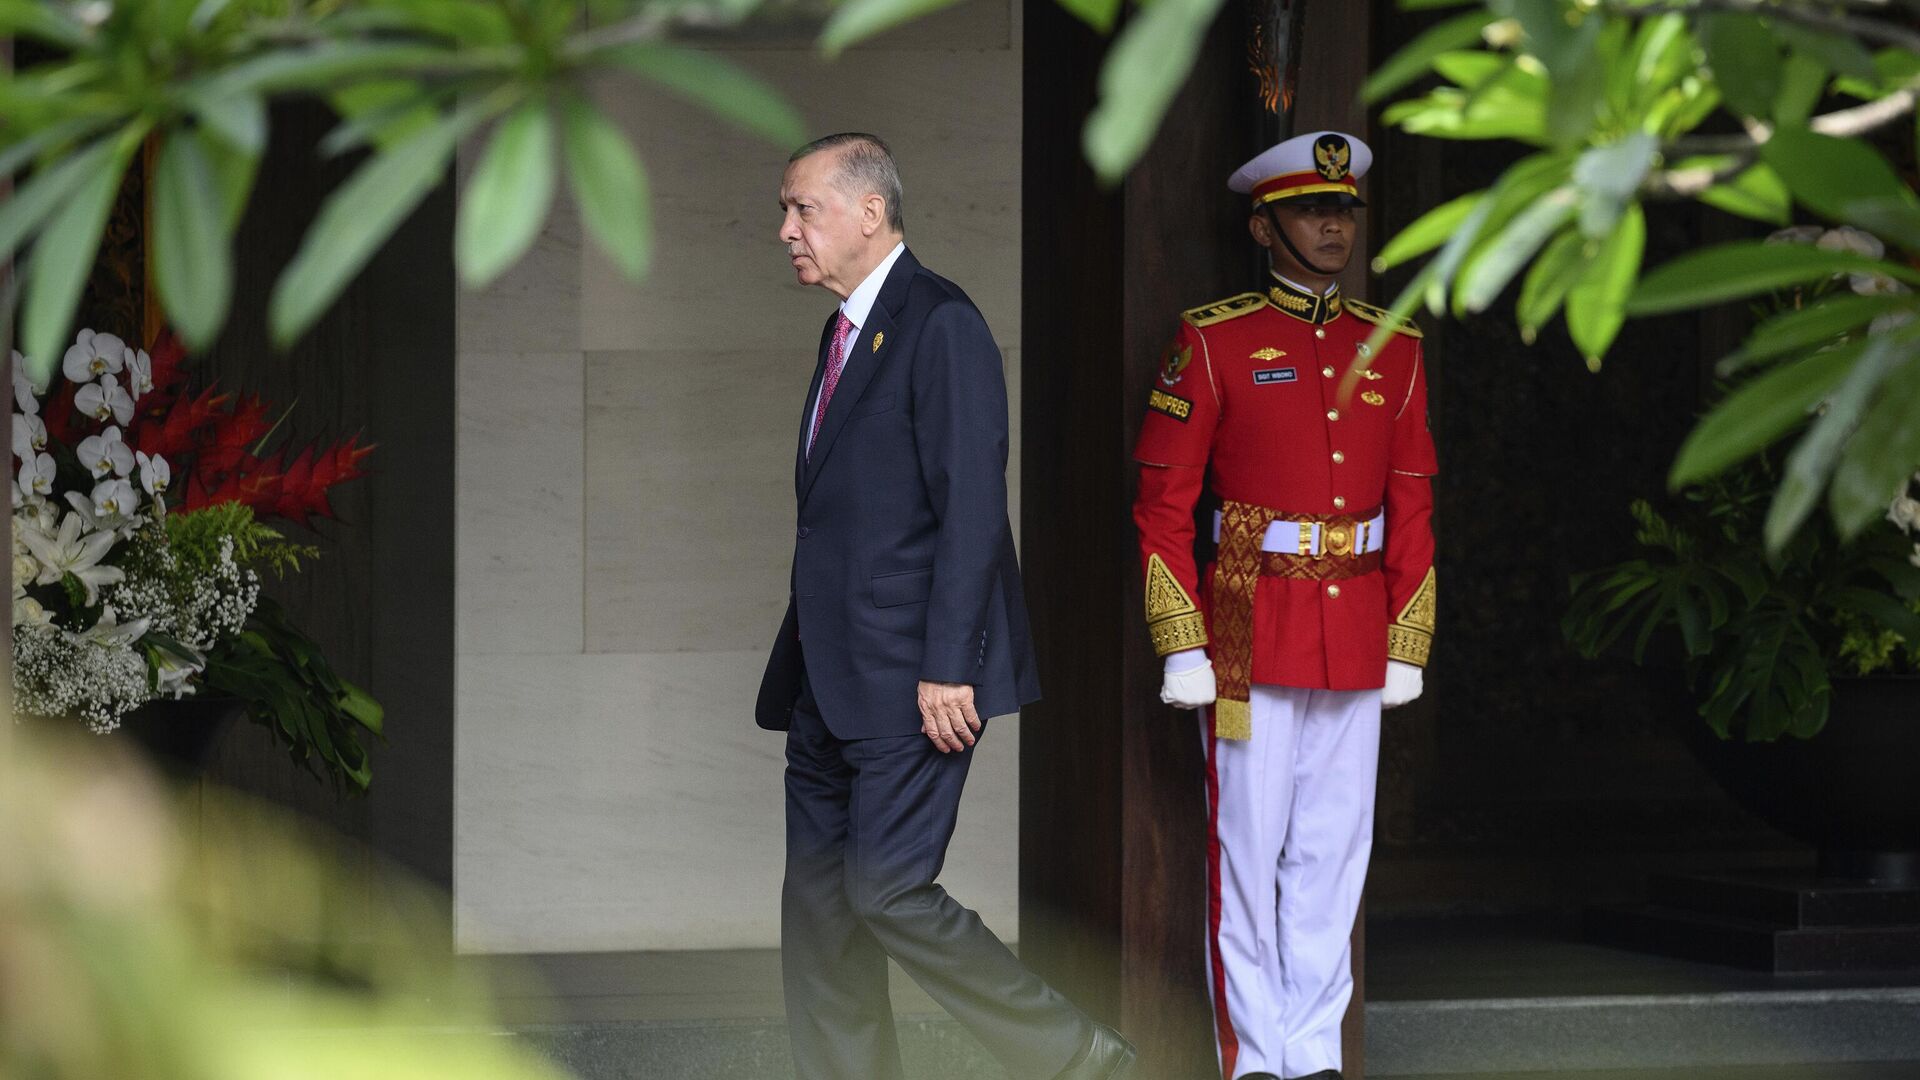 Президент Турции Реджеп Тайип Эрдоган прибывает к началу саммита G20 в Бали, Индонезия - Sputnik Латвия, 1920, 16.11.2022